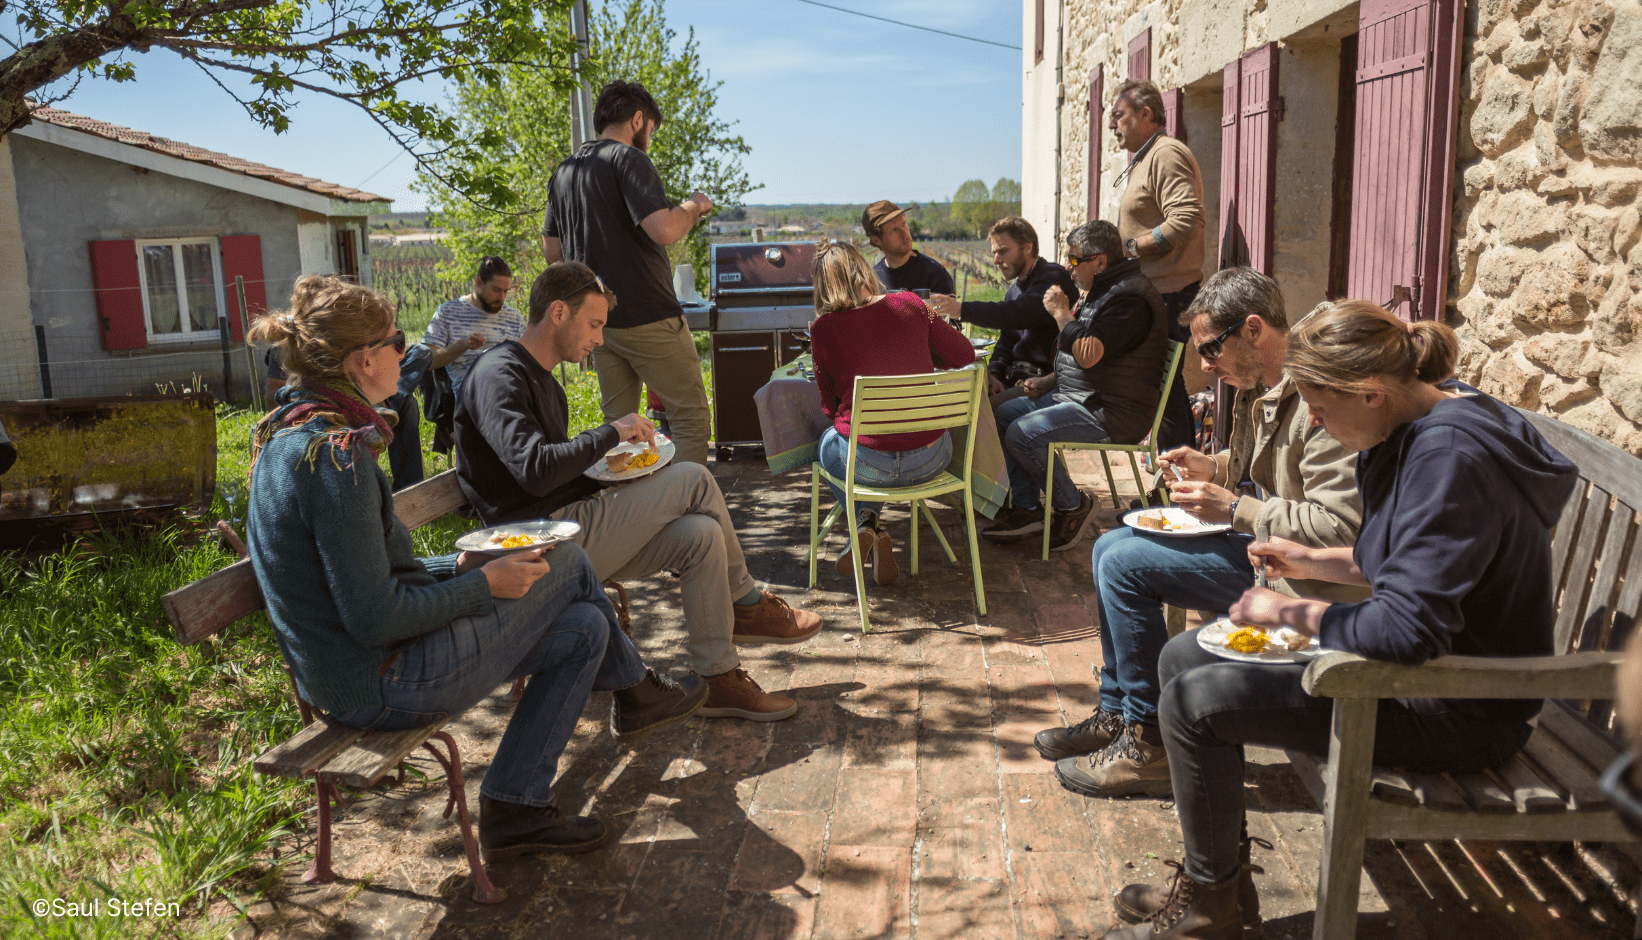 Repas des apprenants de l'EFA au soleil pendant leur semaine en Gironde.